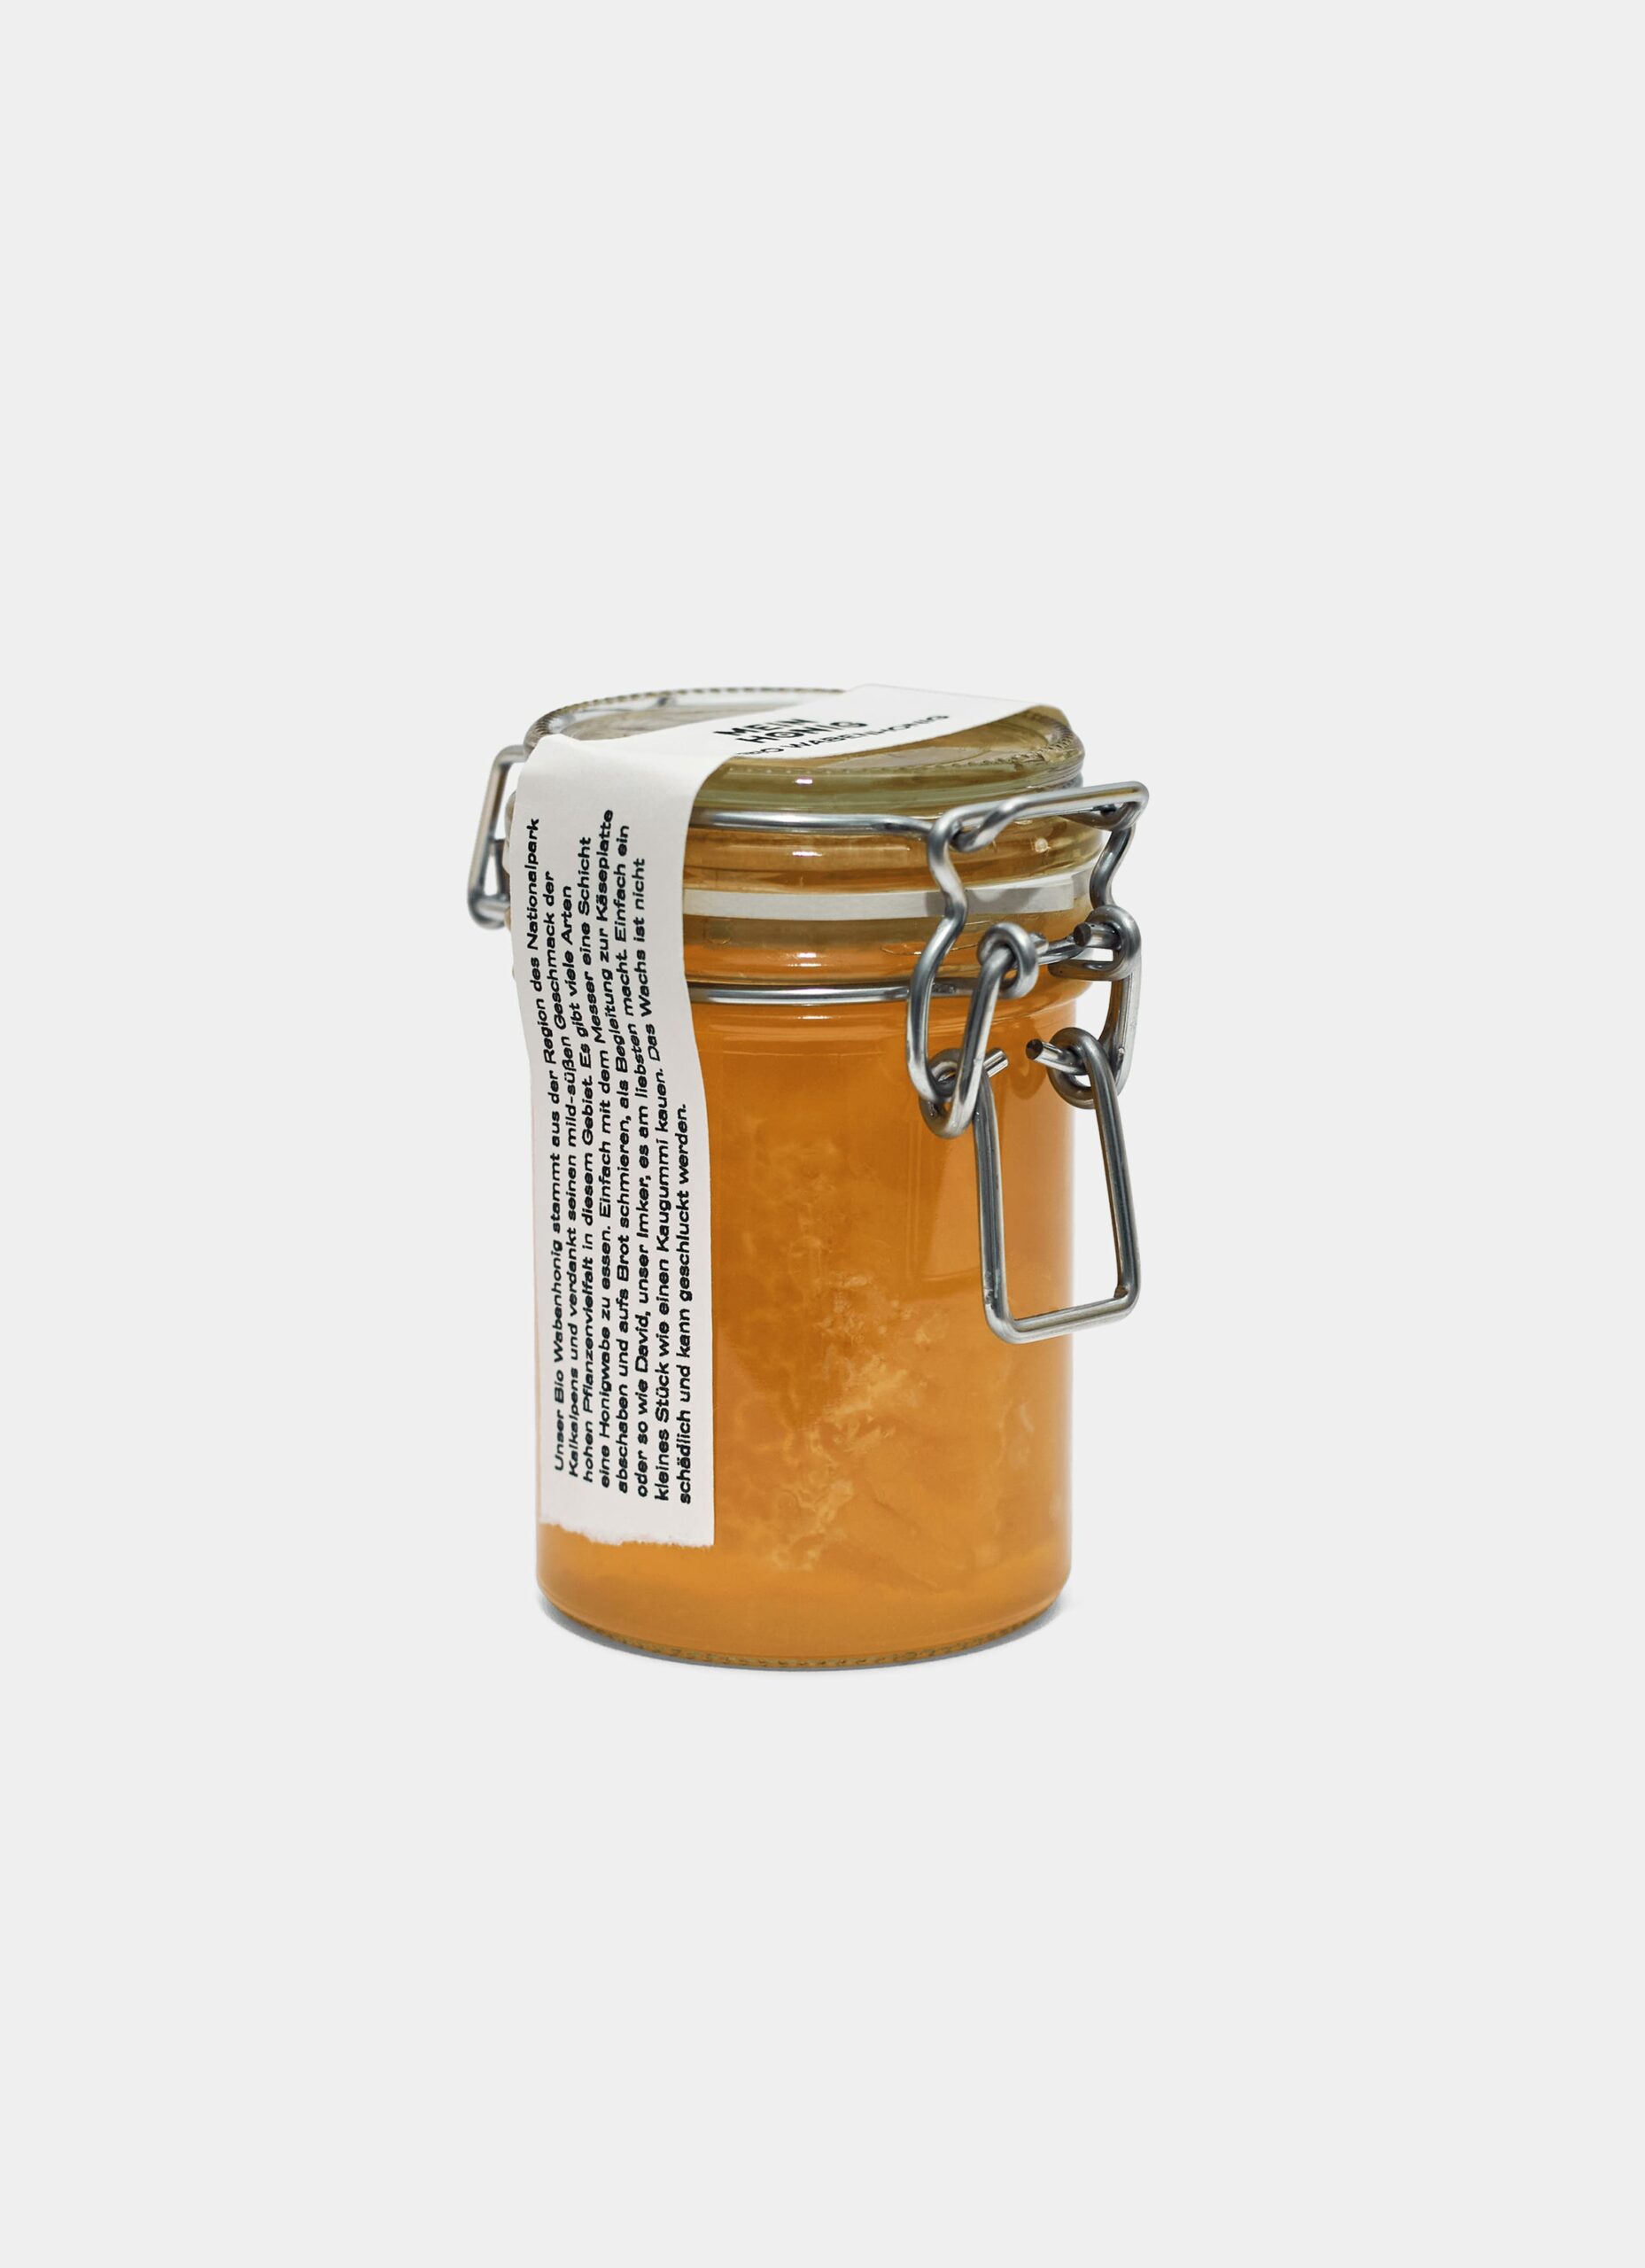 Mein Honig - Organic Honeycomb in a jar - 240ml